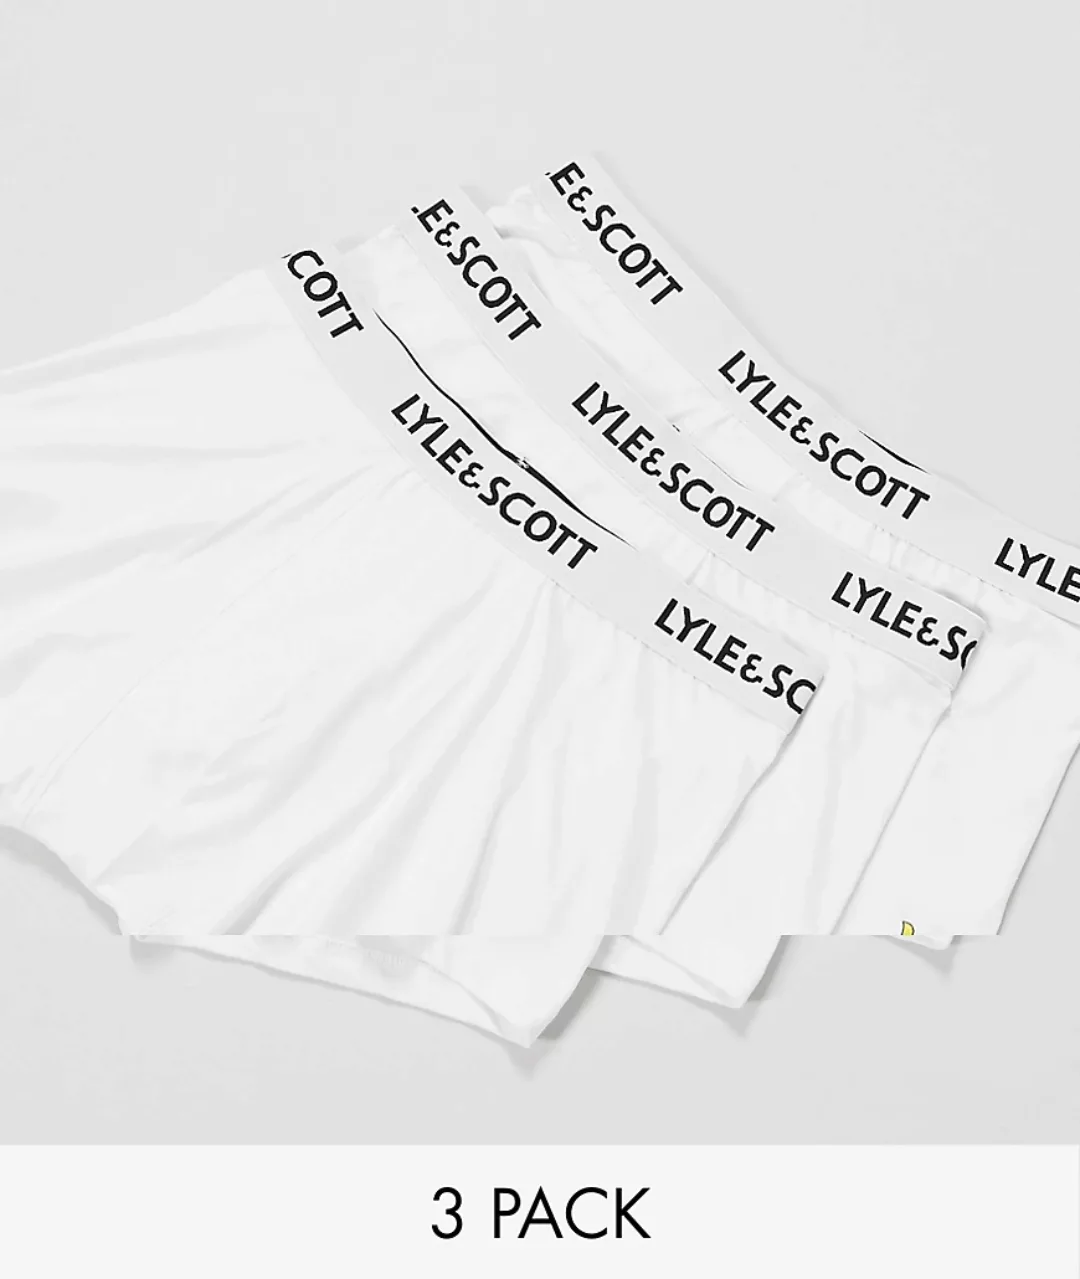 Lyle & Scott – Bodywear – 3er-Pack Unterhosen in Weiß günstig online kaufen